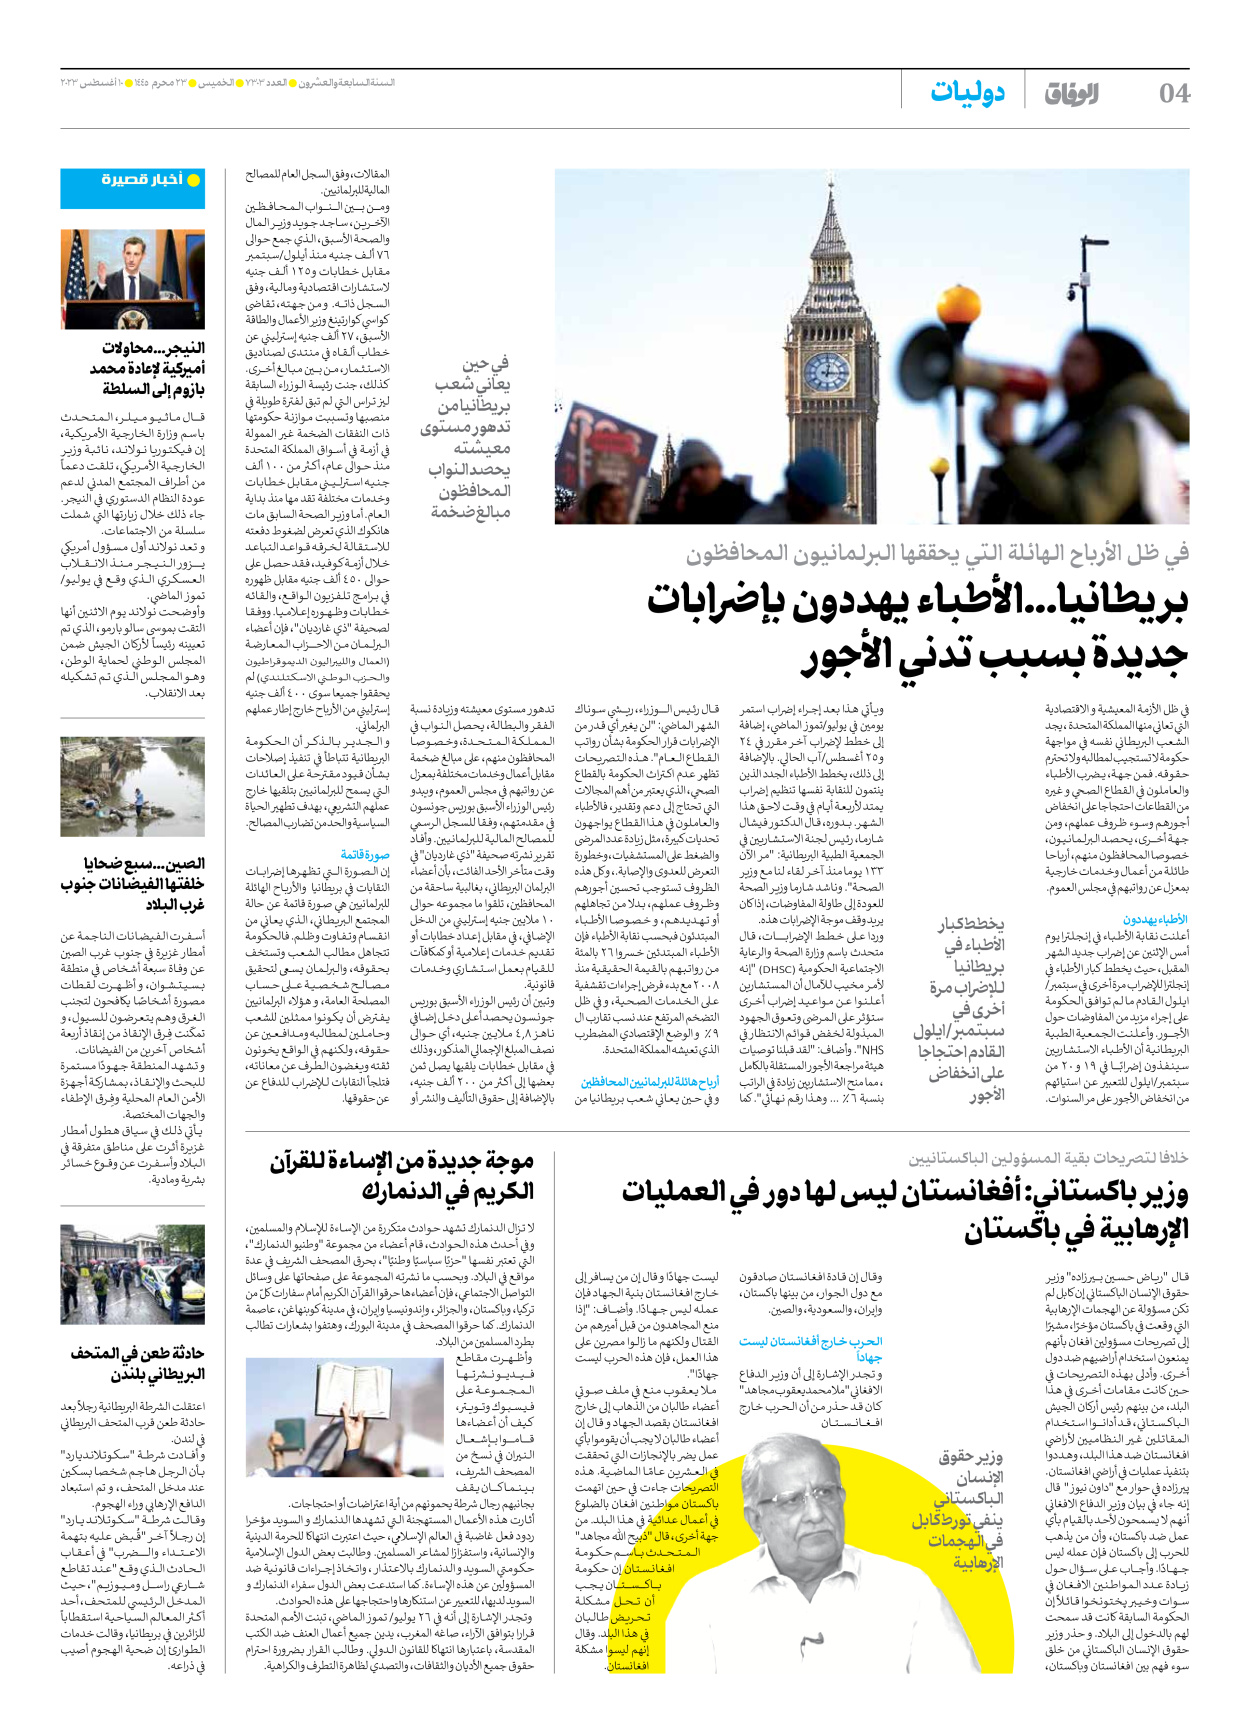 صحیفة ایران الدولیة الوفاق - العدد سبعة آلاف وثلاثمائة وثلاثة - ١٠ أغسطس ٢٠٢٣ - الصفحة ٤